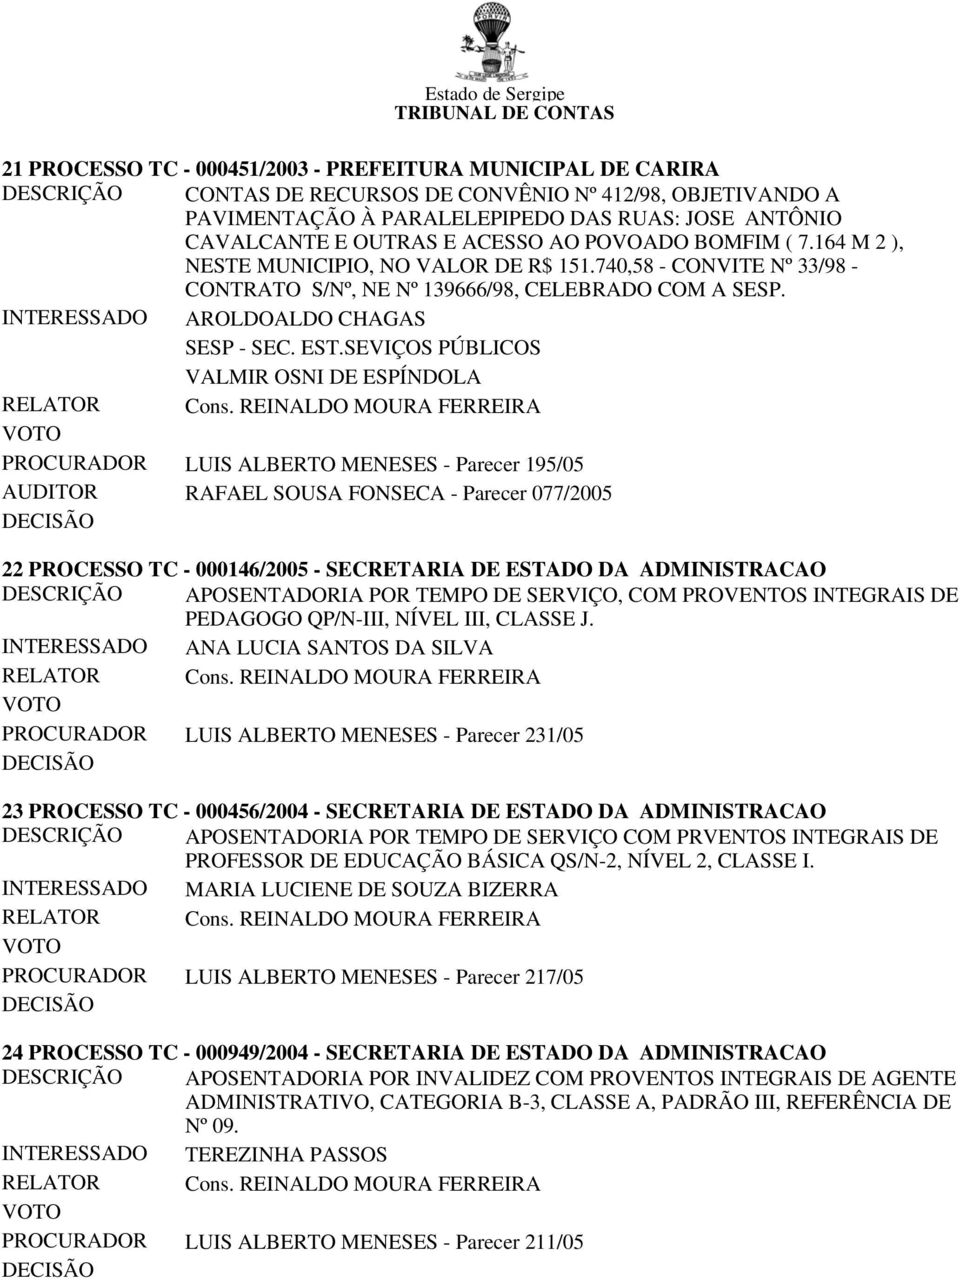 INTERESSADO AROLDOALDO CHAGAS SESP - SEC. EST.